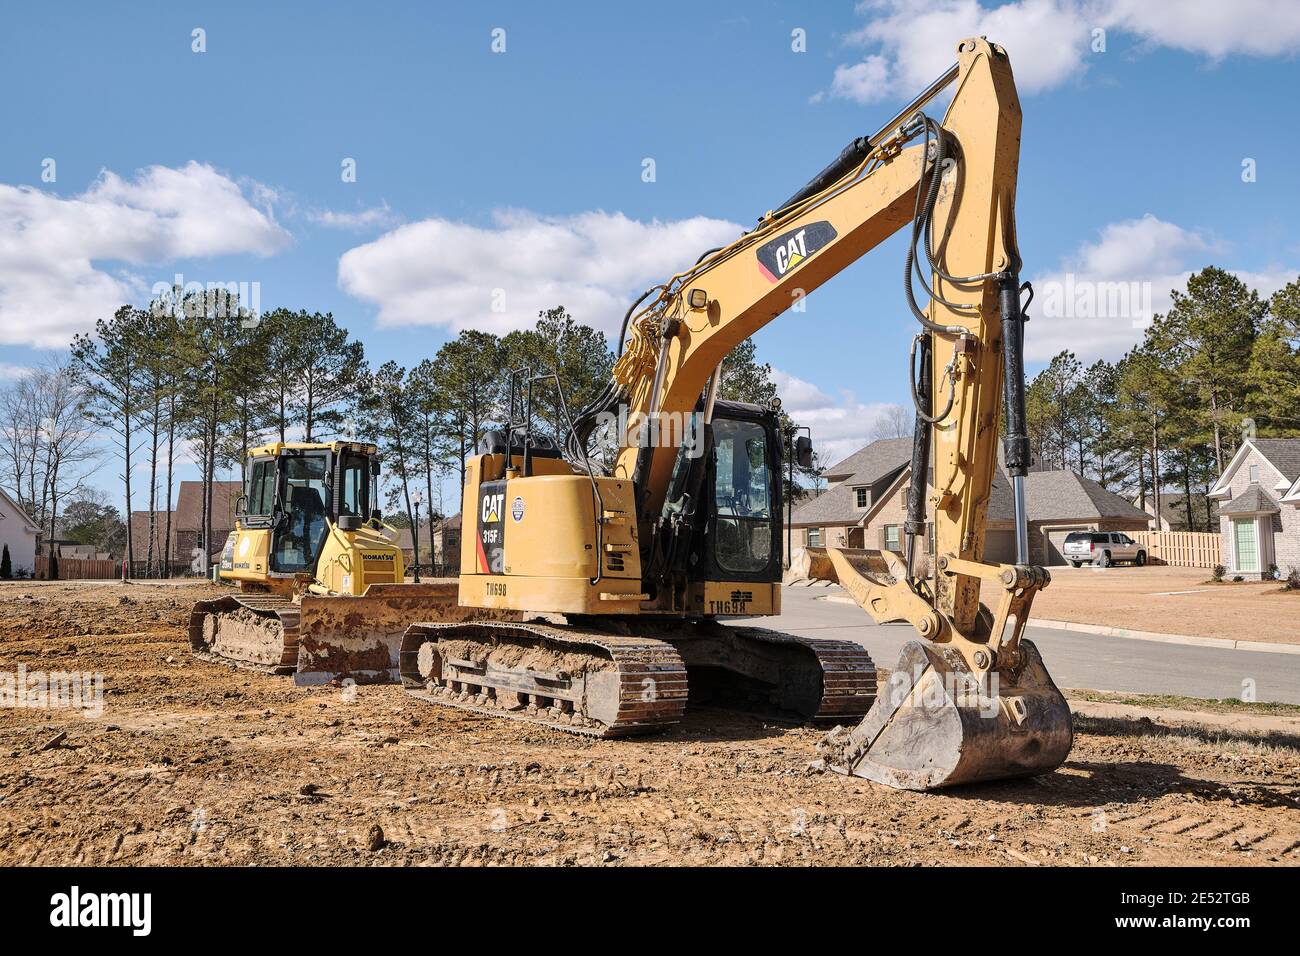 Caterpillar, CAT, pelle hydraulique 315FL et petit bulldozer Komatsu 39PX sur un chantier de construction à Montgomery, Alabama, États-Unis. Banque D'Images